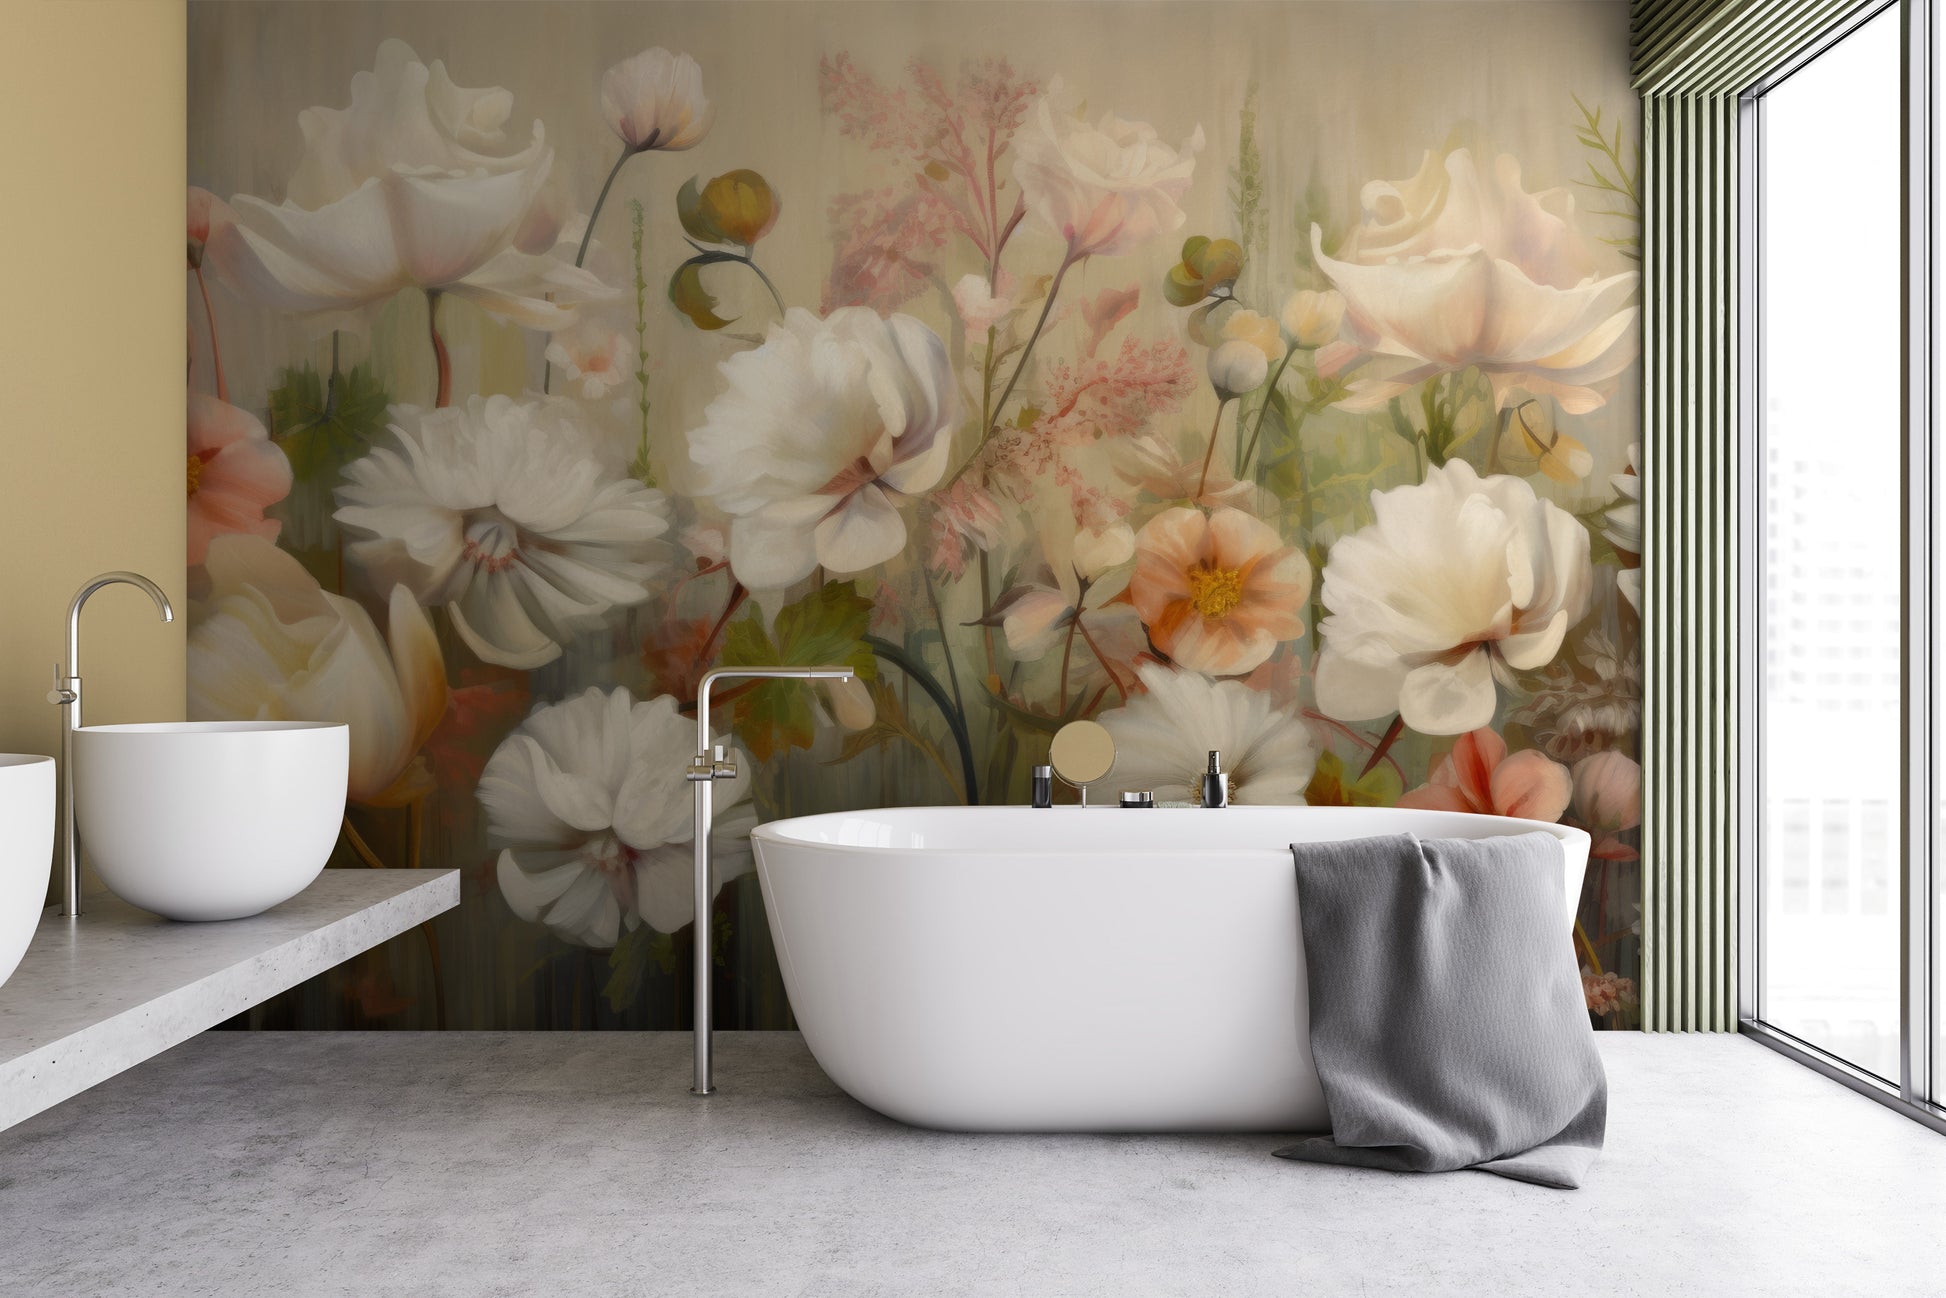 Fototapeta artystyczna o nazwie Serene Pastel Bouquet pokazana w aranżacji wnętrza.